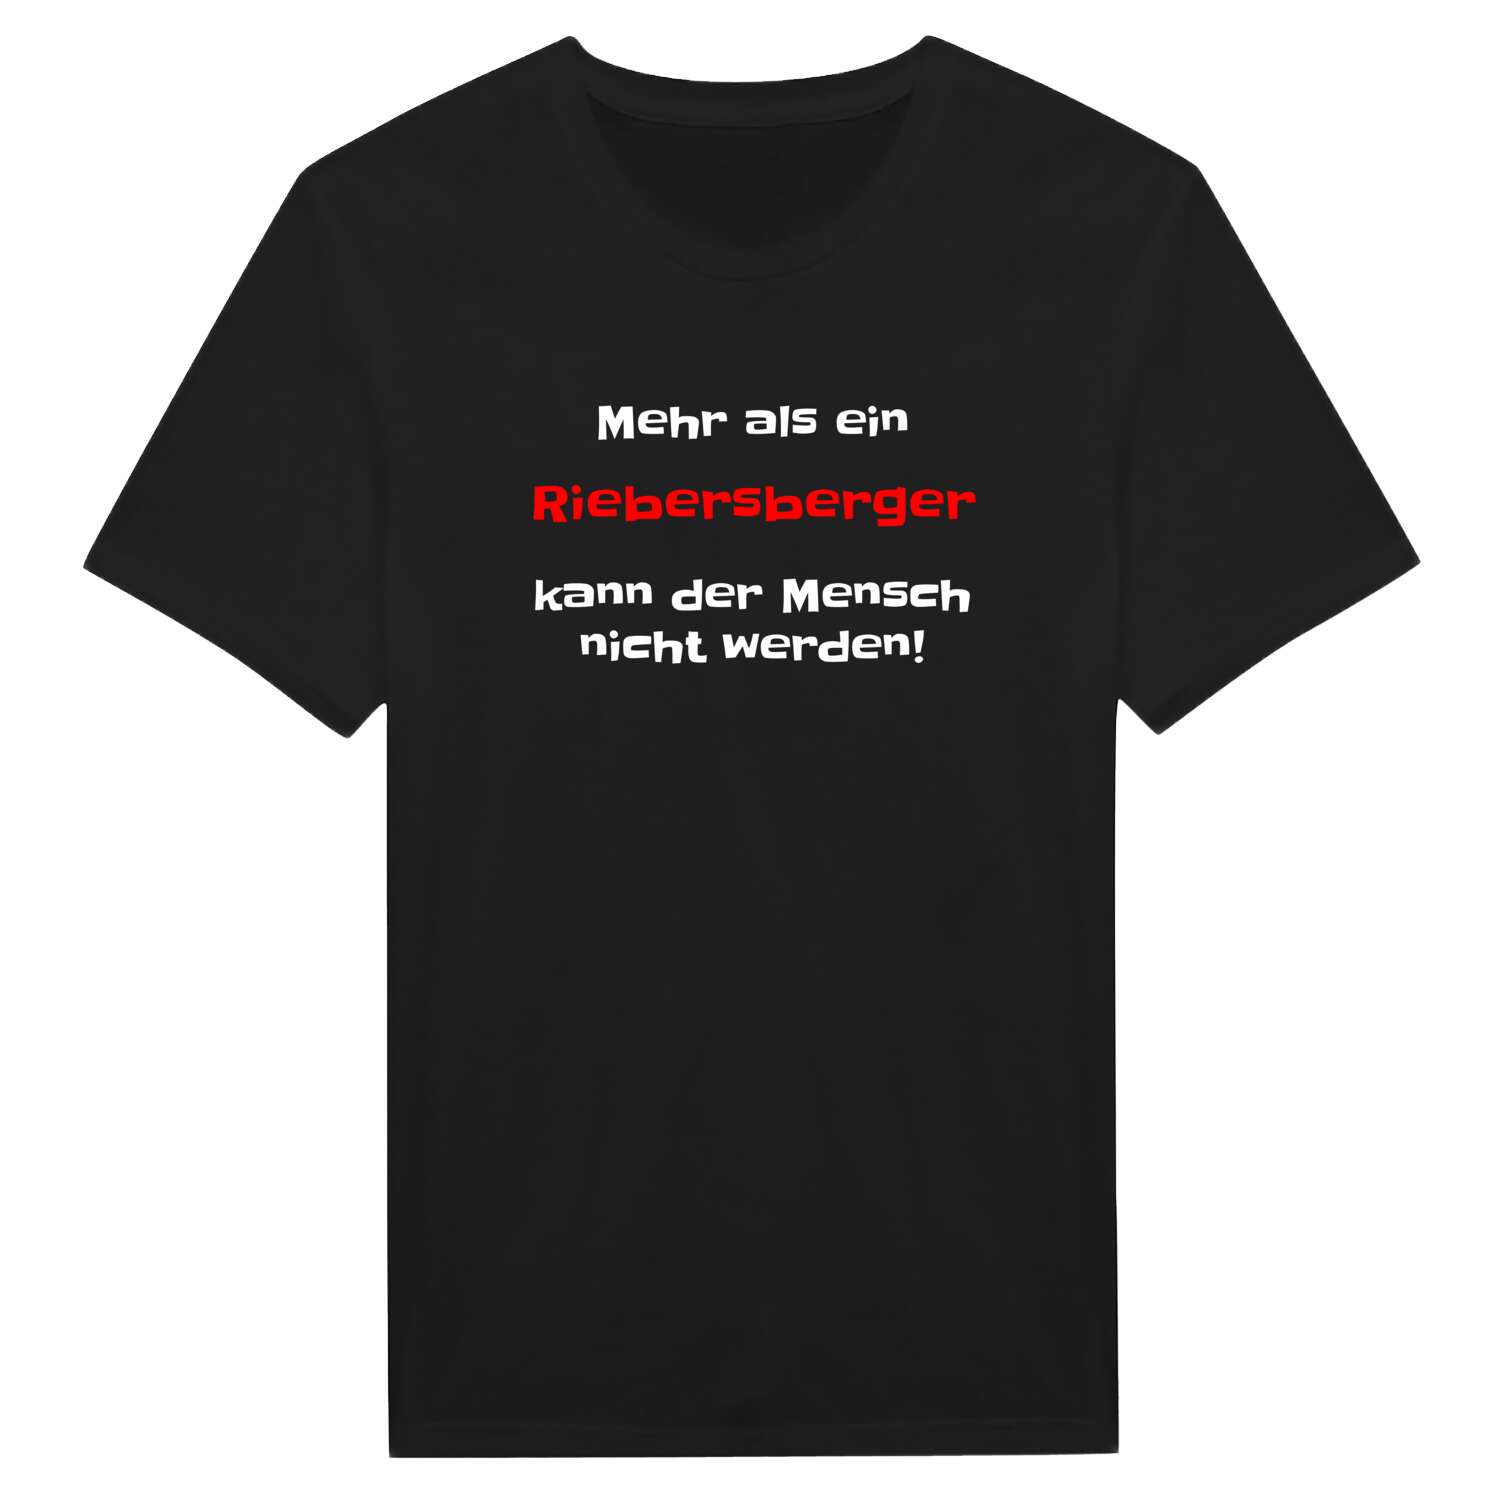 Riebersberg T-Shirt »Mehr als ein«